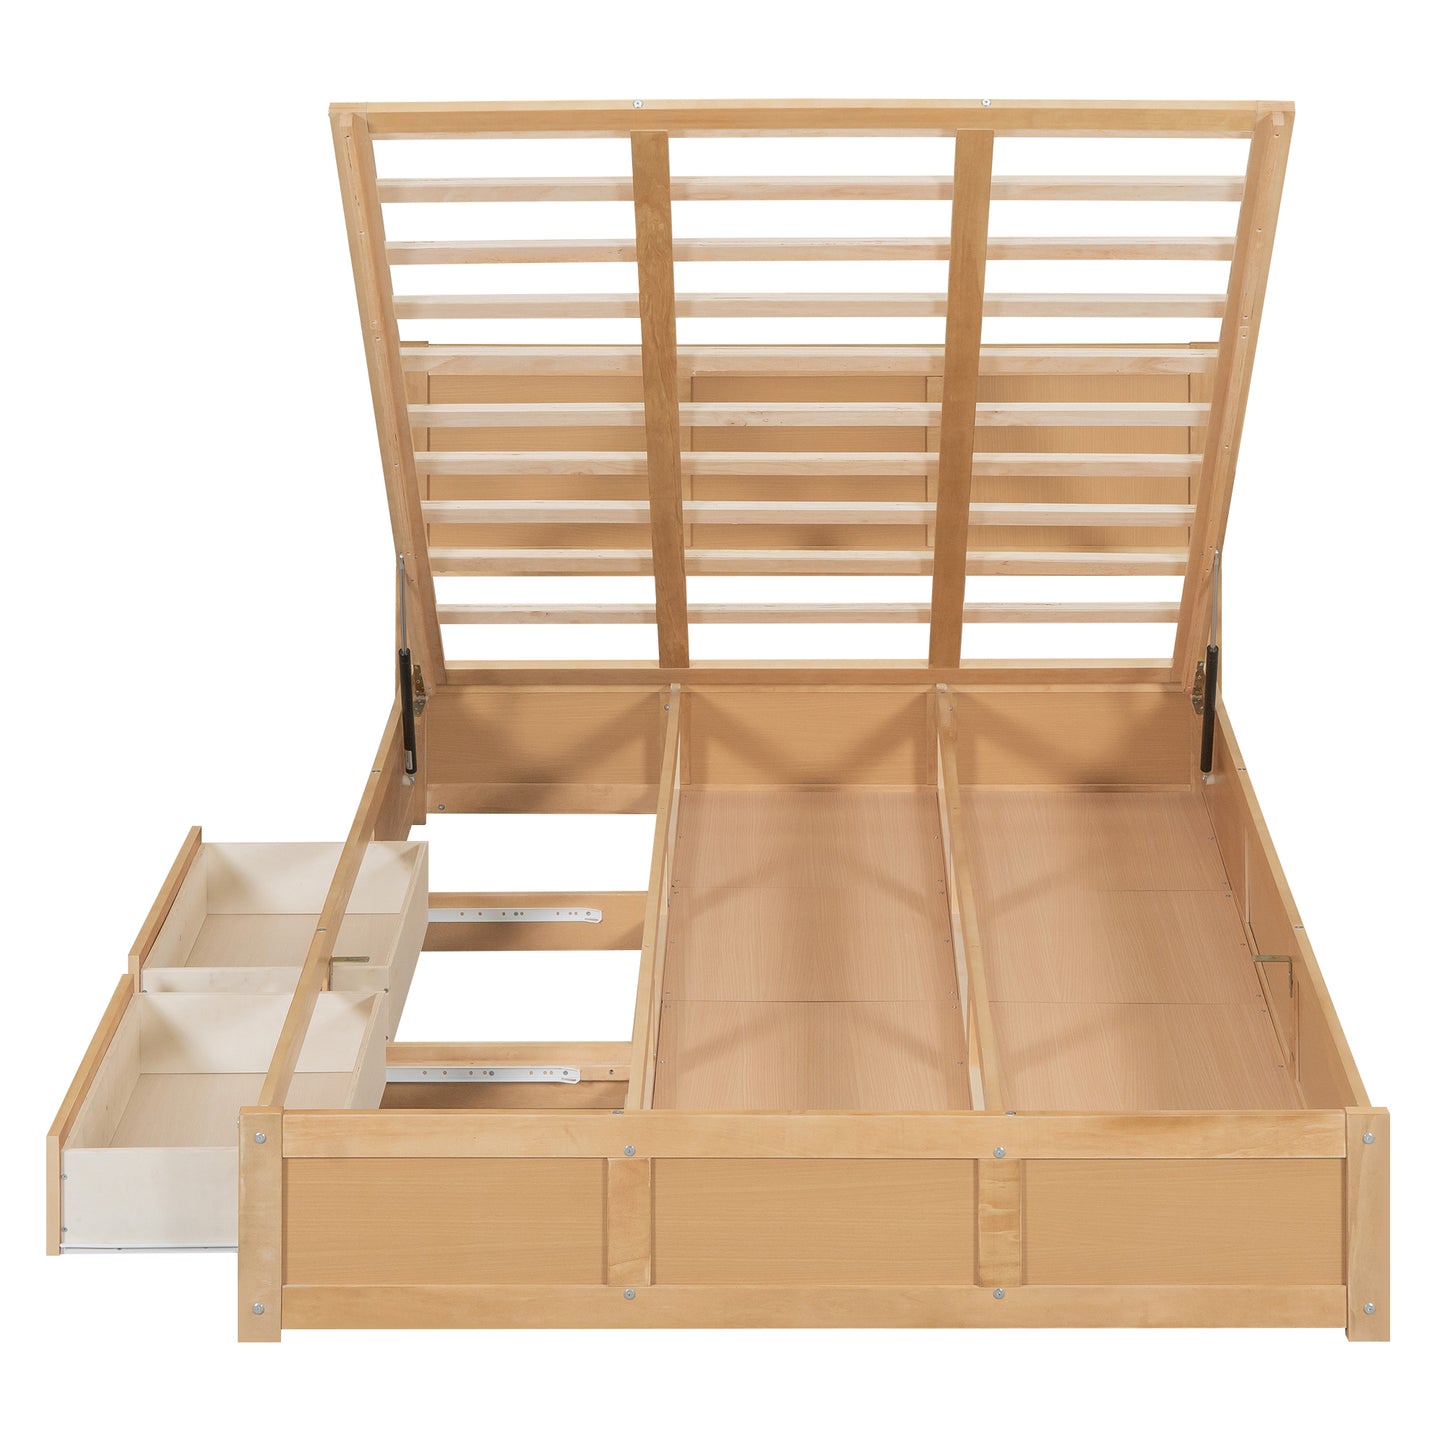 Lit plateforme en bois queen size avec rangement en dessous et 2 tiroirs, couleur bois